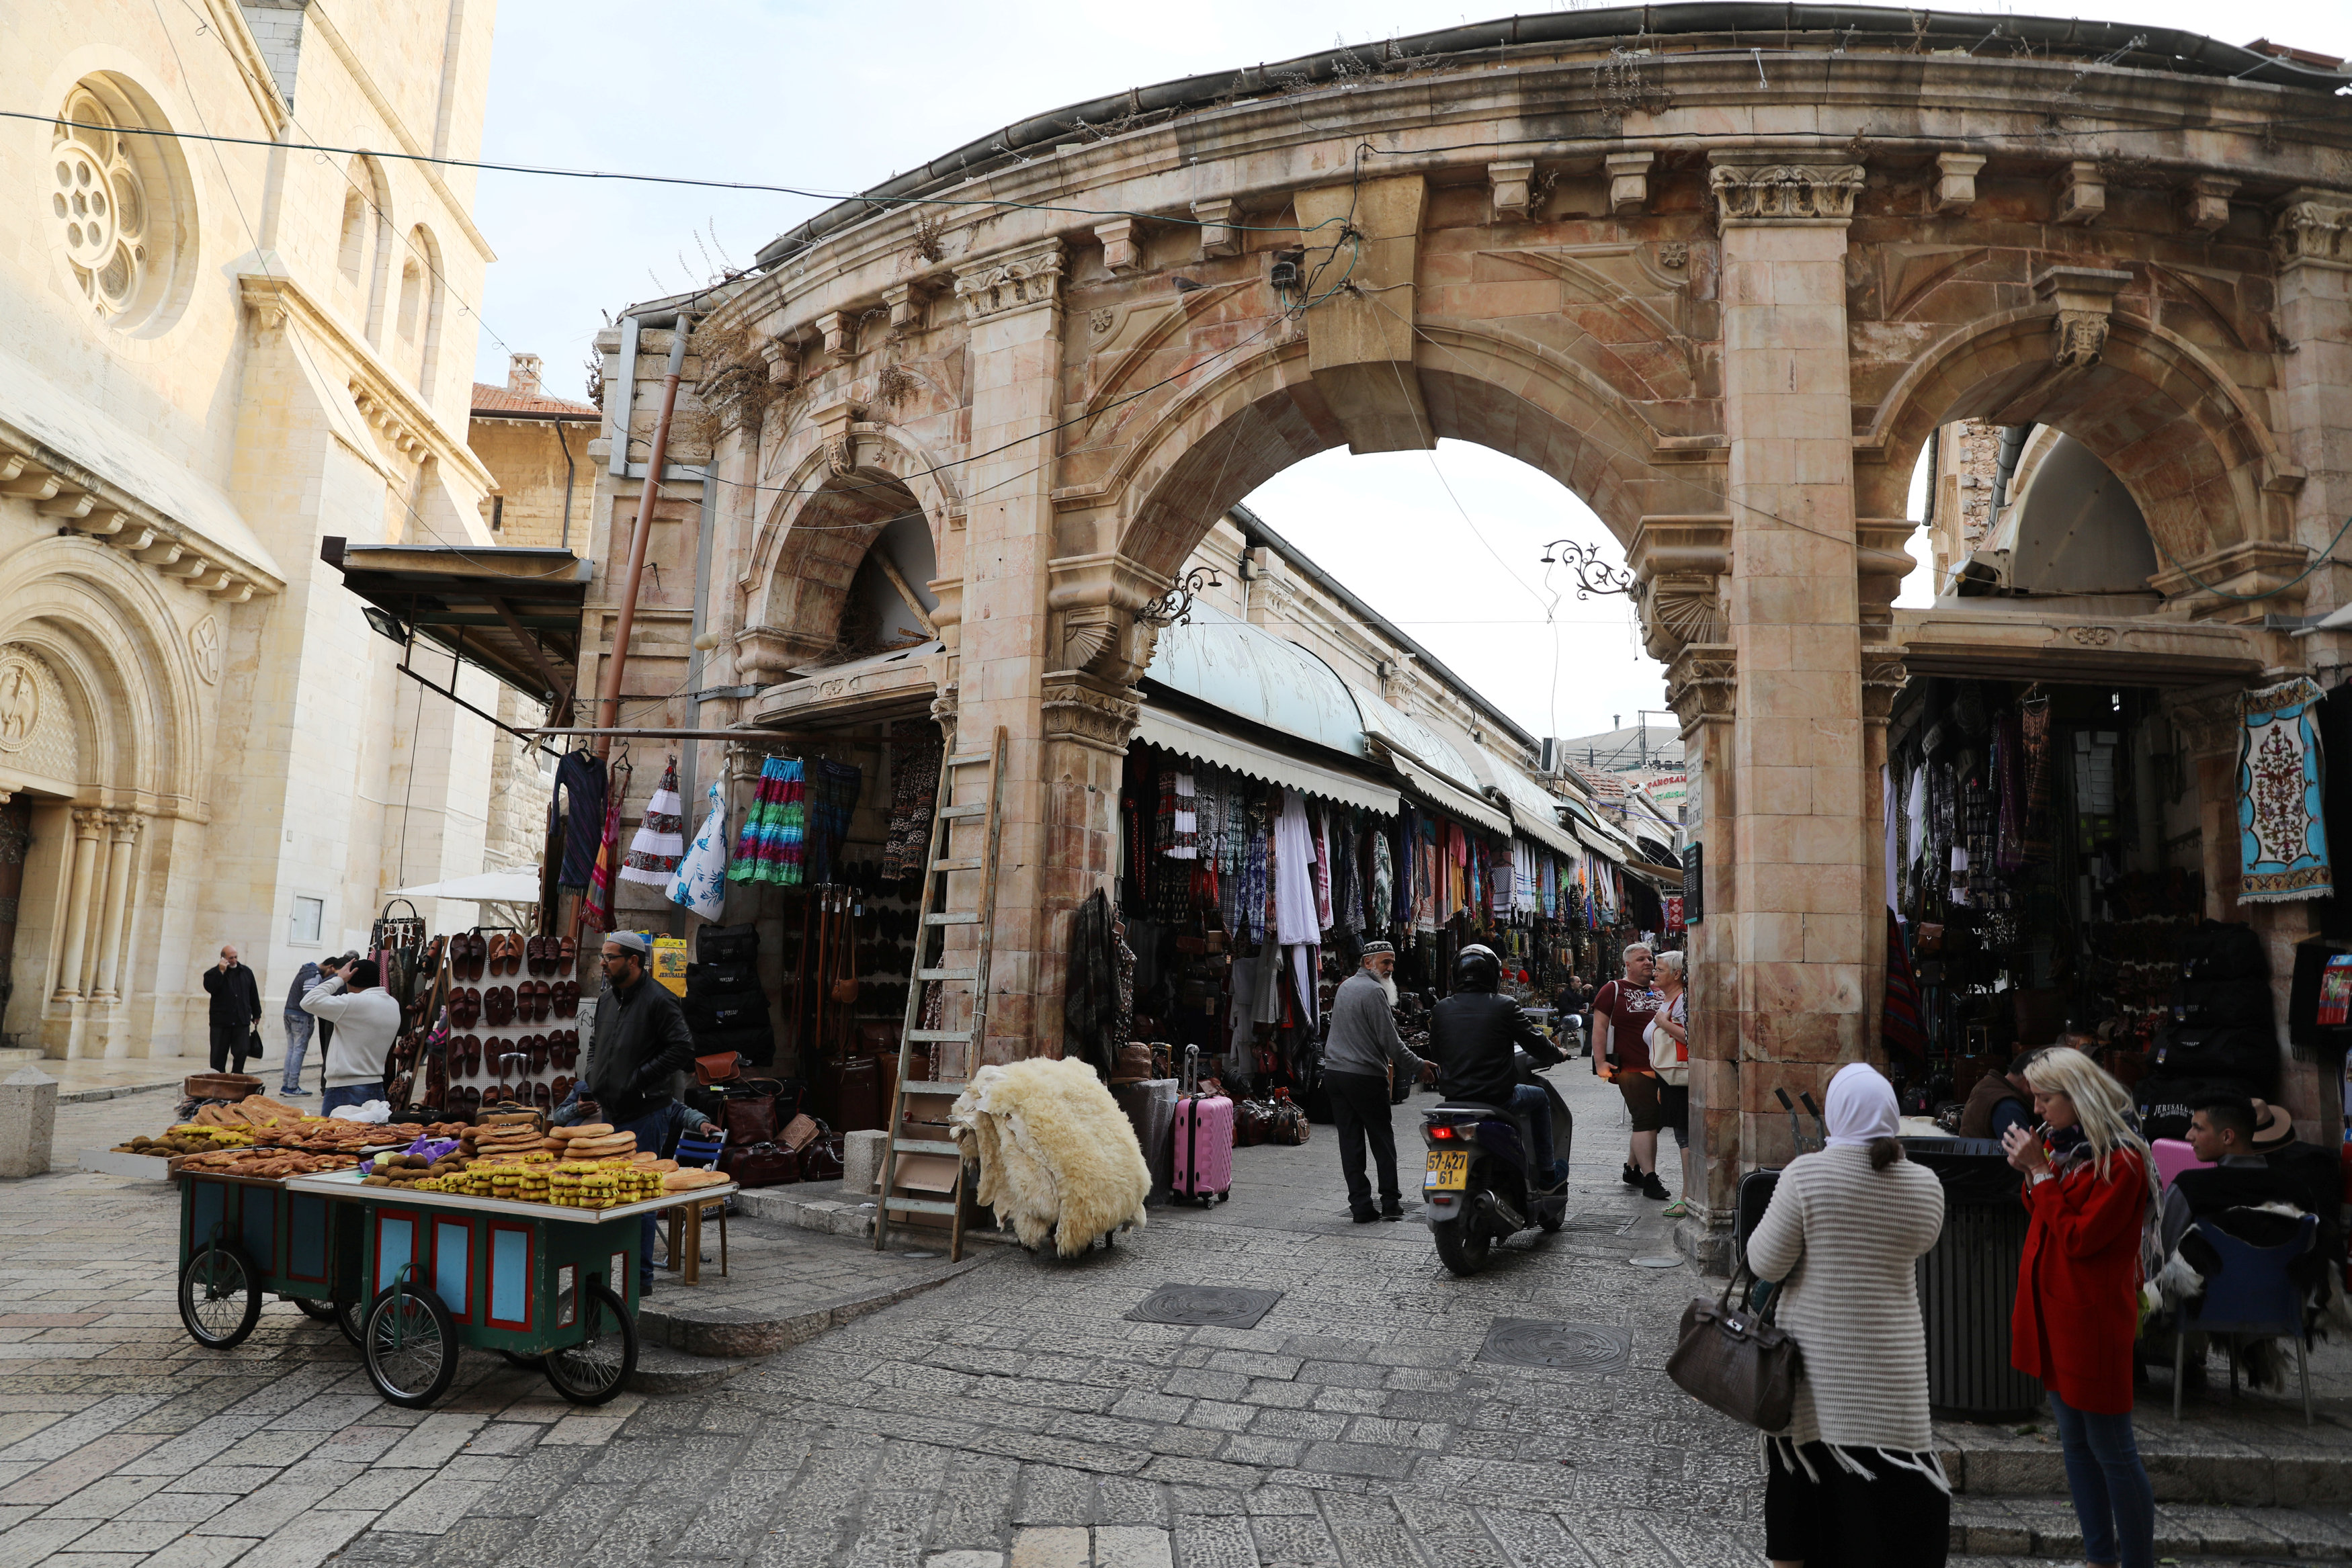 耶路撒冷至今仍是个无国家的城市。图示老城区即东耶路撒冷，是巴勒斯坦人主要的居住地区。-路透社-